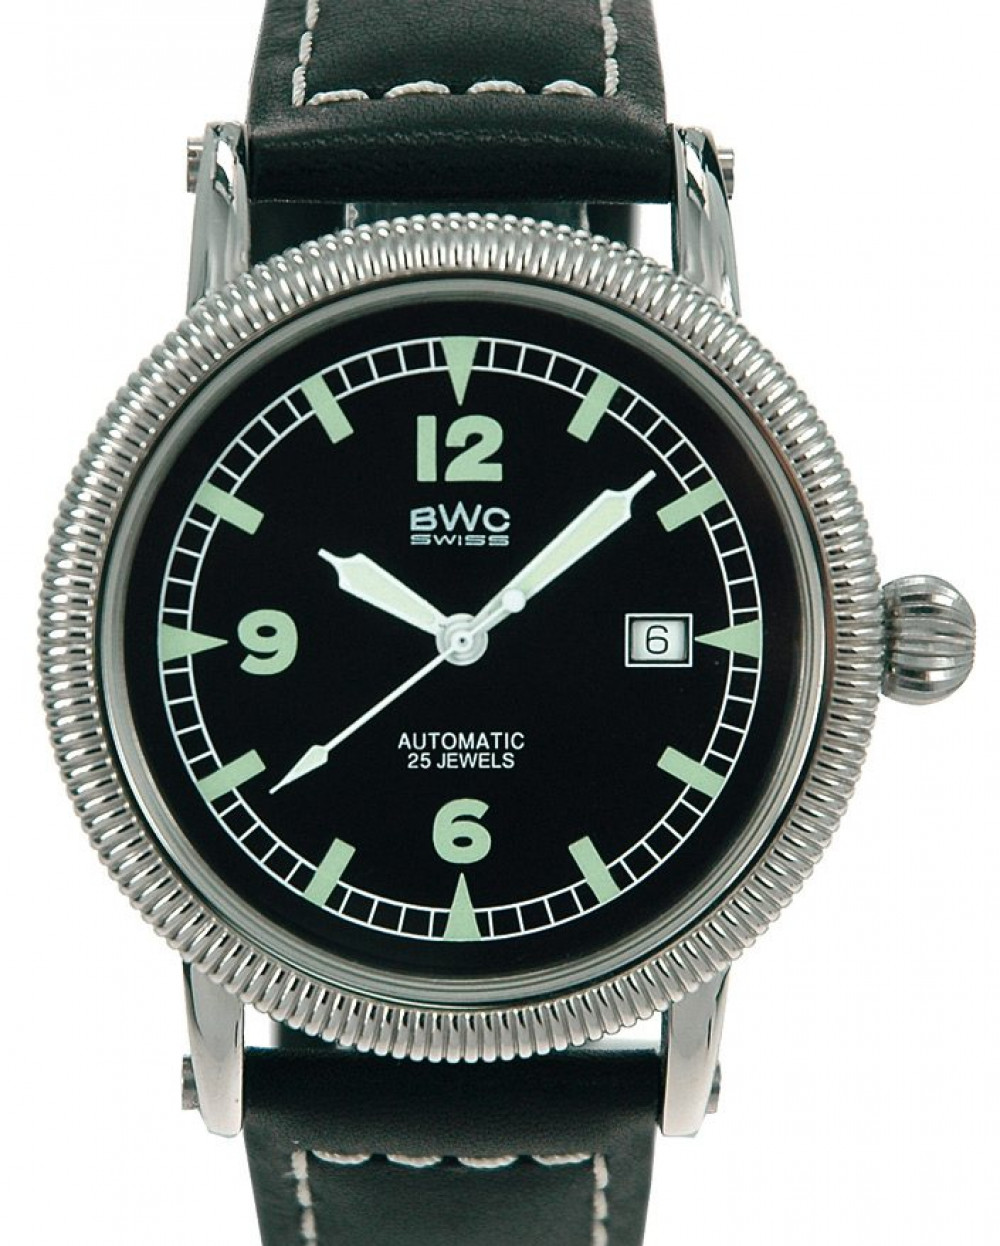 Zegarek firmy BWC-Swiss, model 20766